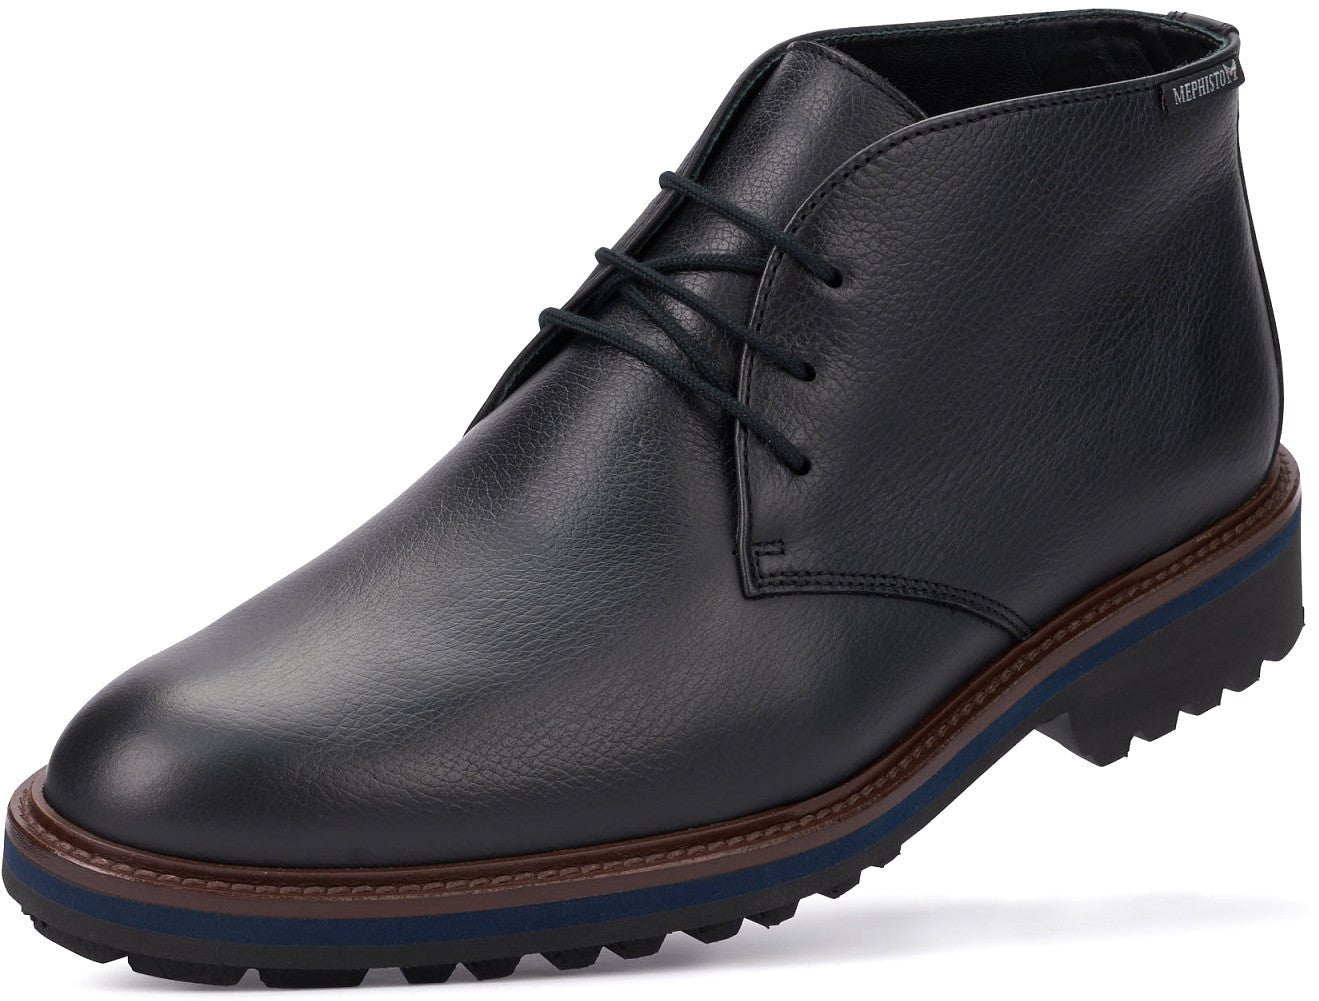 'BERTO' men's lace-up boot - Black - Chaplinshoes'BERTO' men's lace-up boot - BlackMephisto